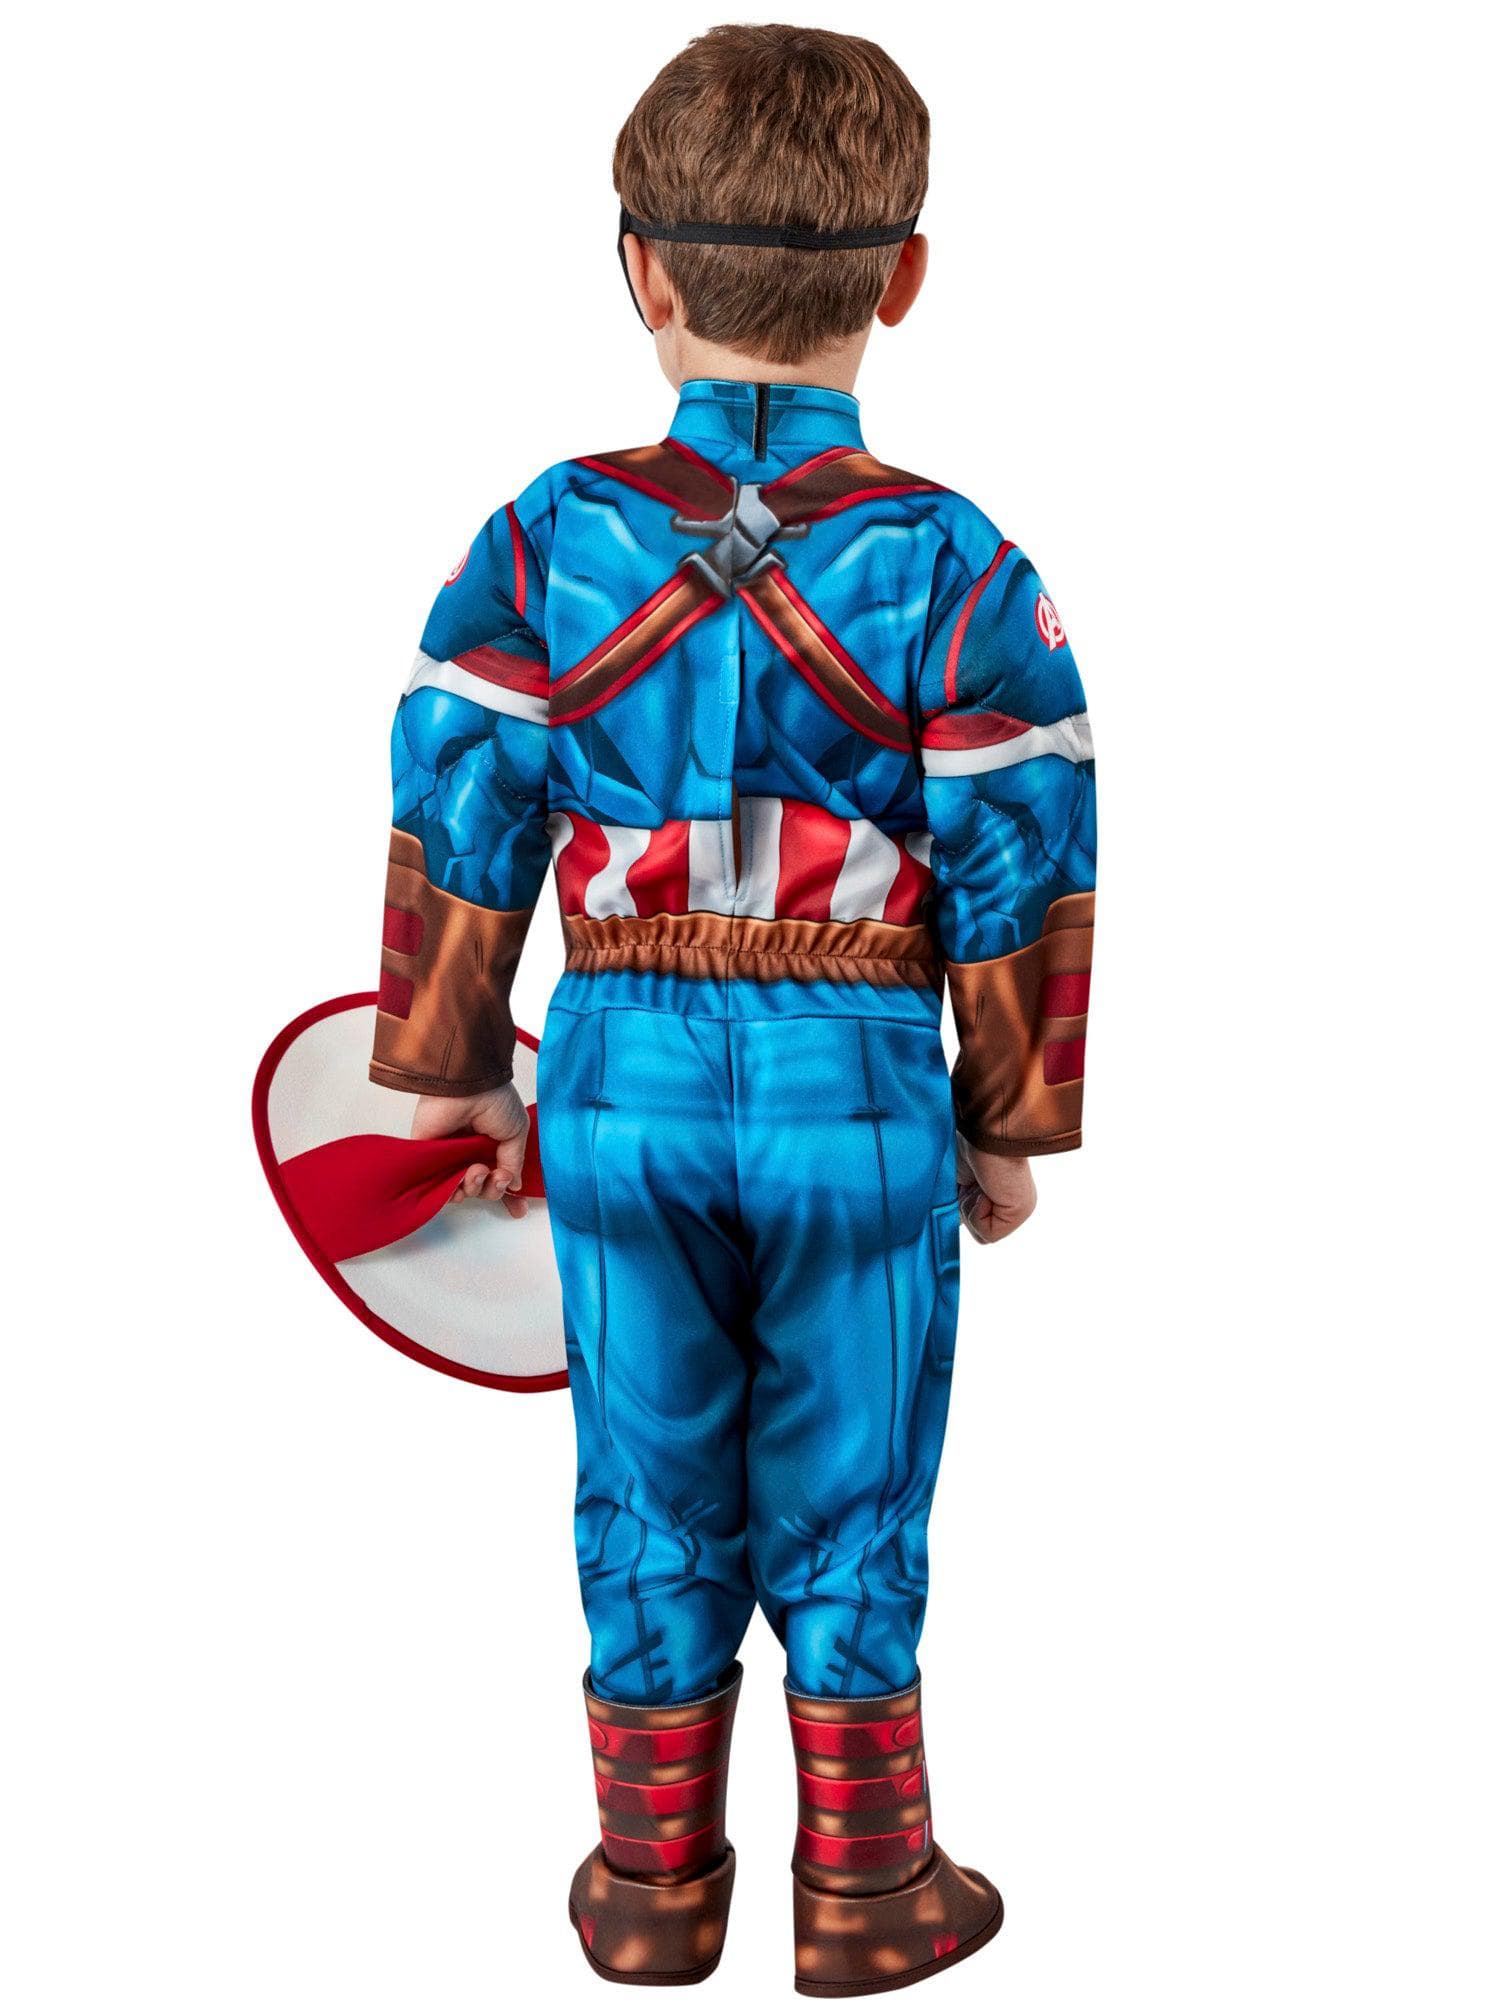 Captain America Toddler Costume - costumes.com